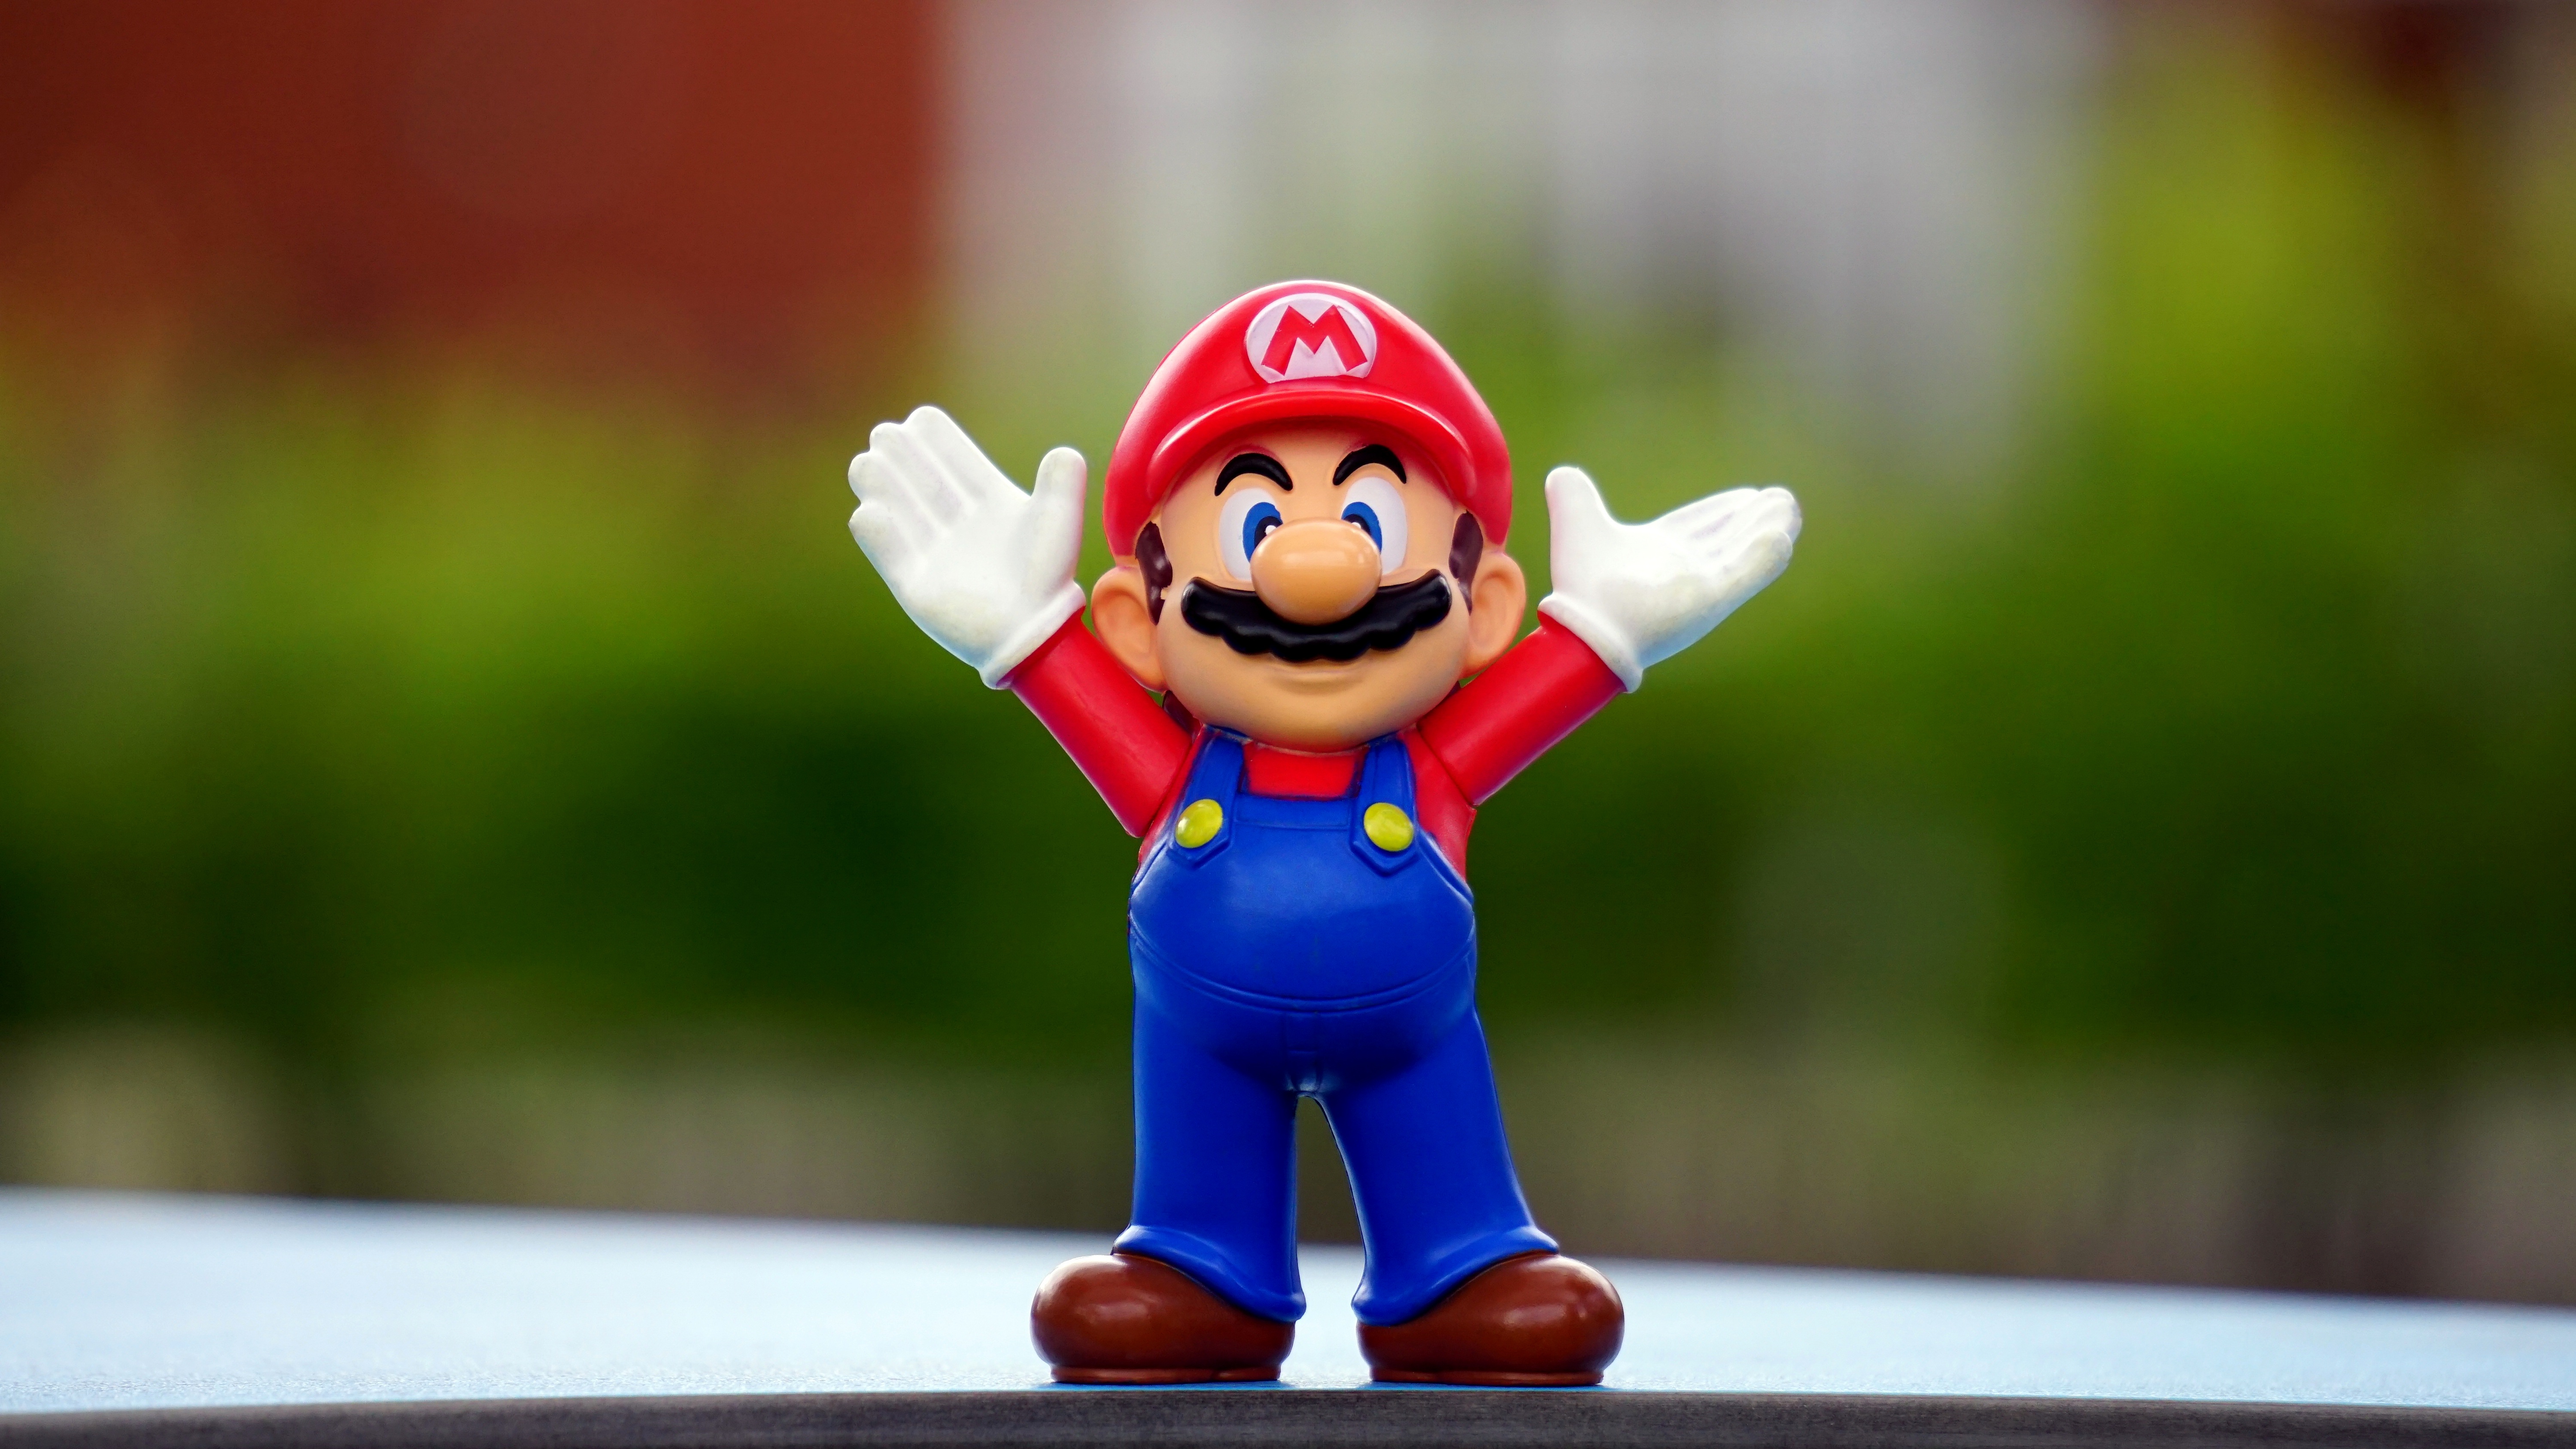 Figurine Mario Super Mario Toy 6000x3376